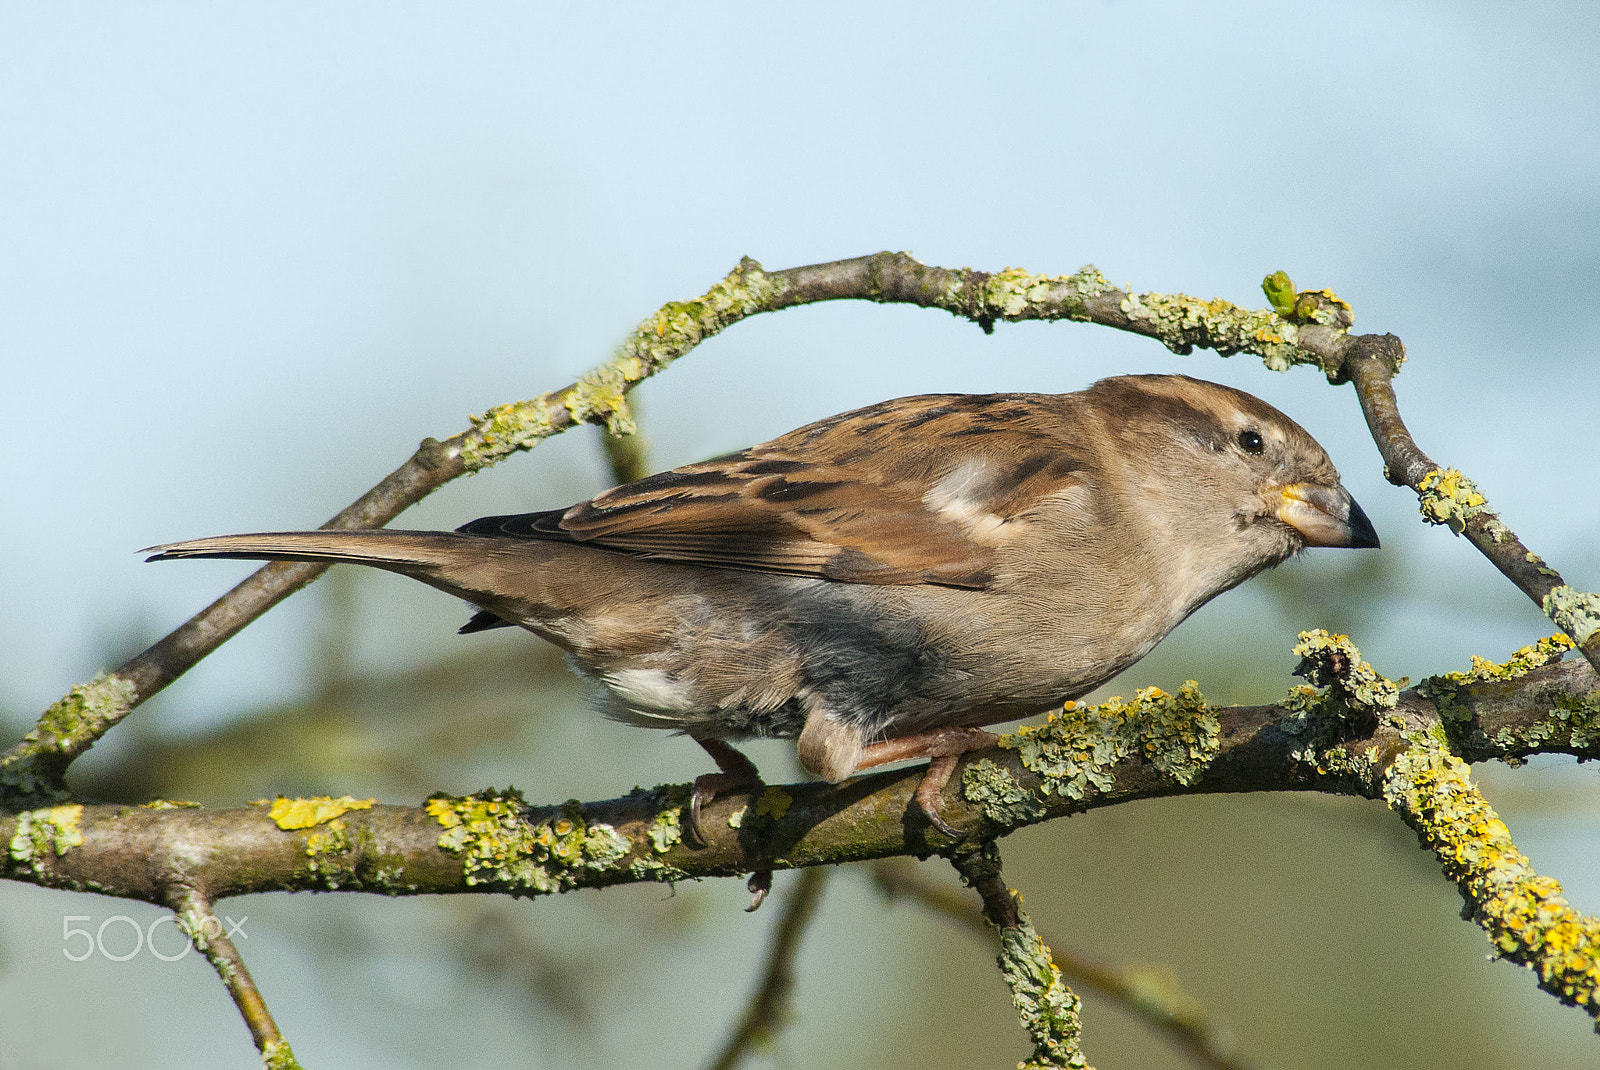 Nikon D90 sample photo. House sparrow on a branch photography